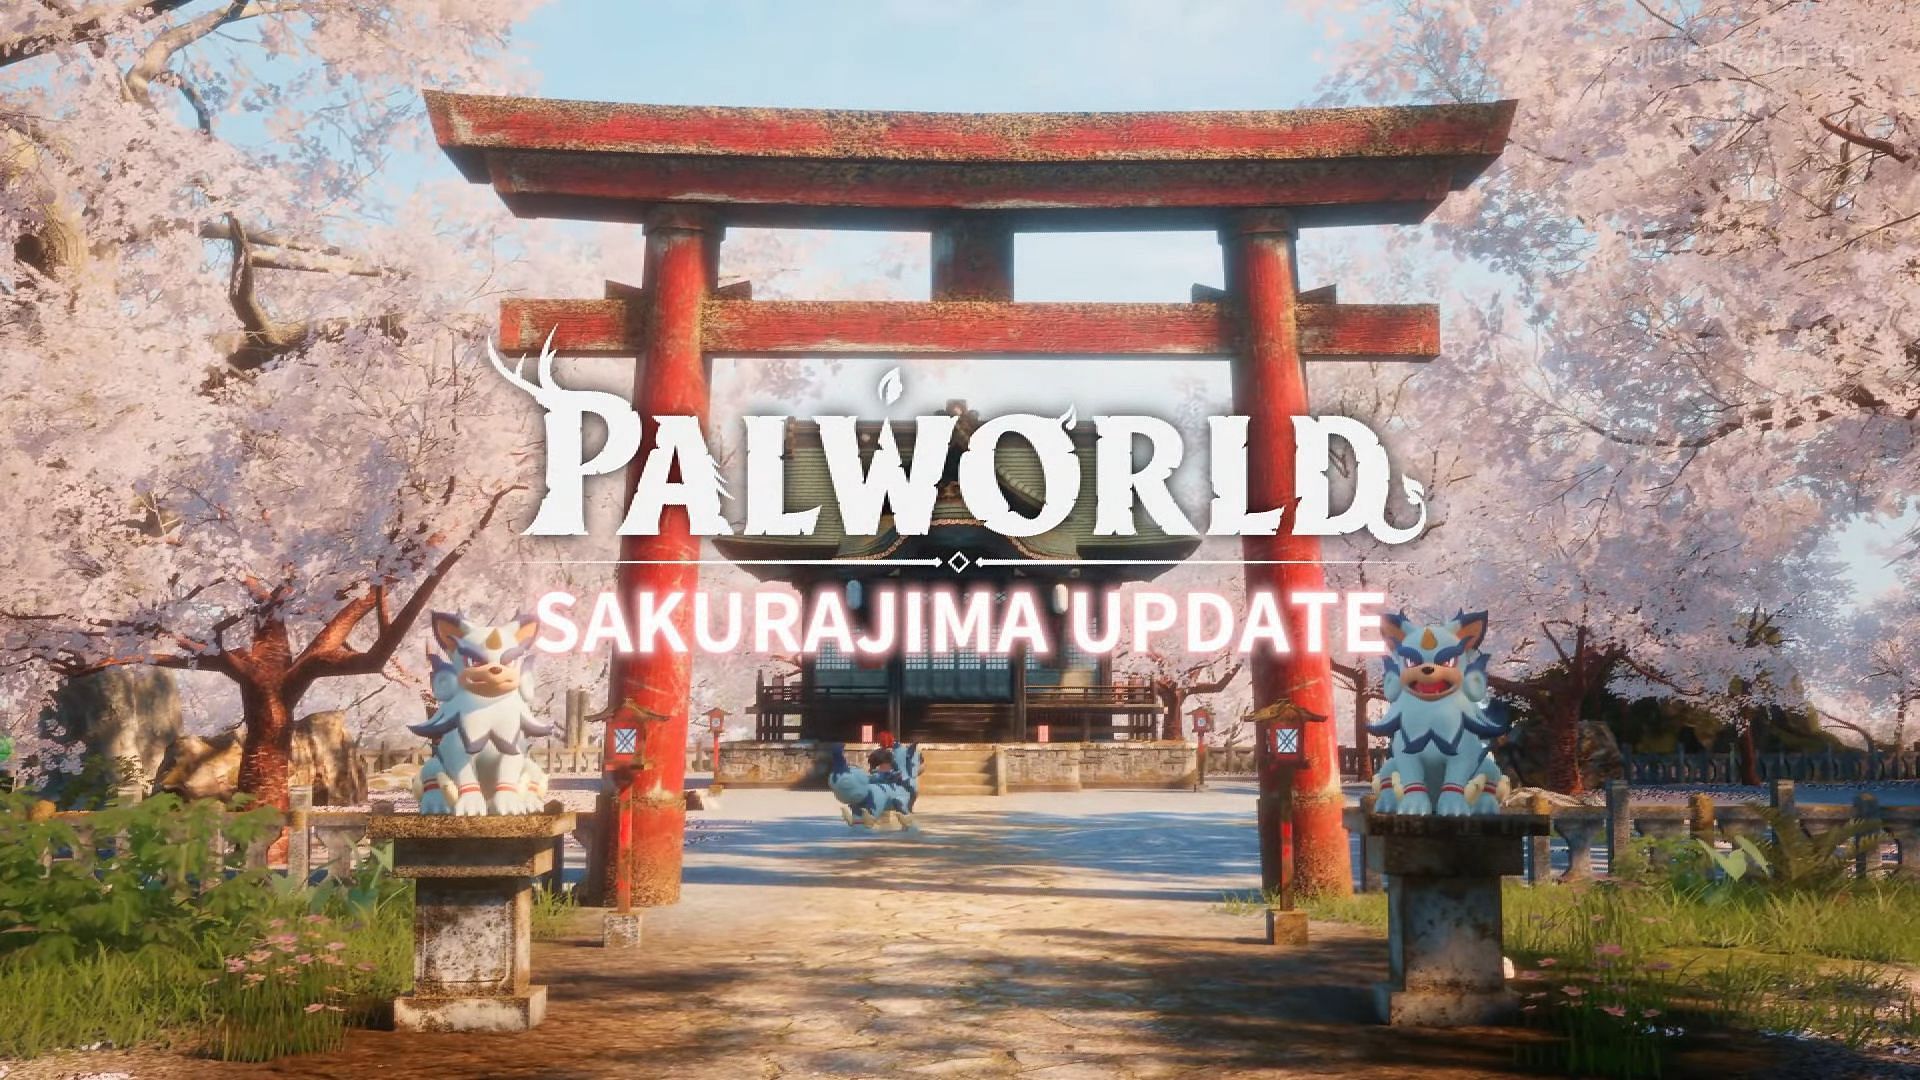 Palworld Sakurajima update.